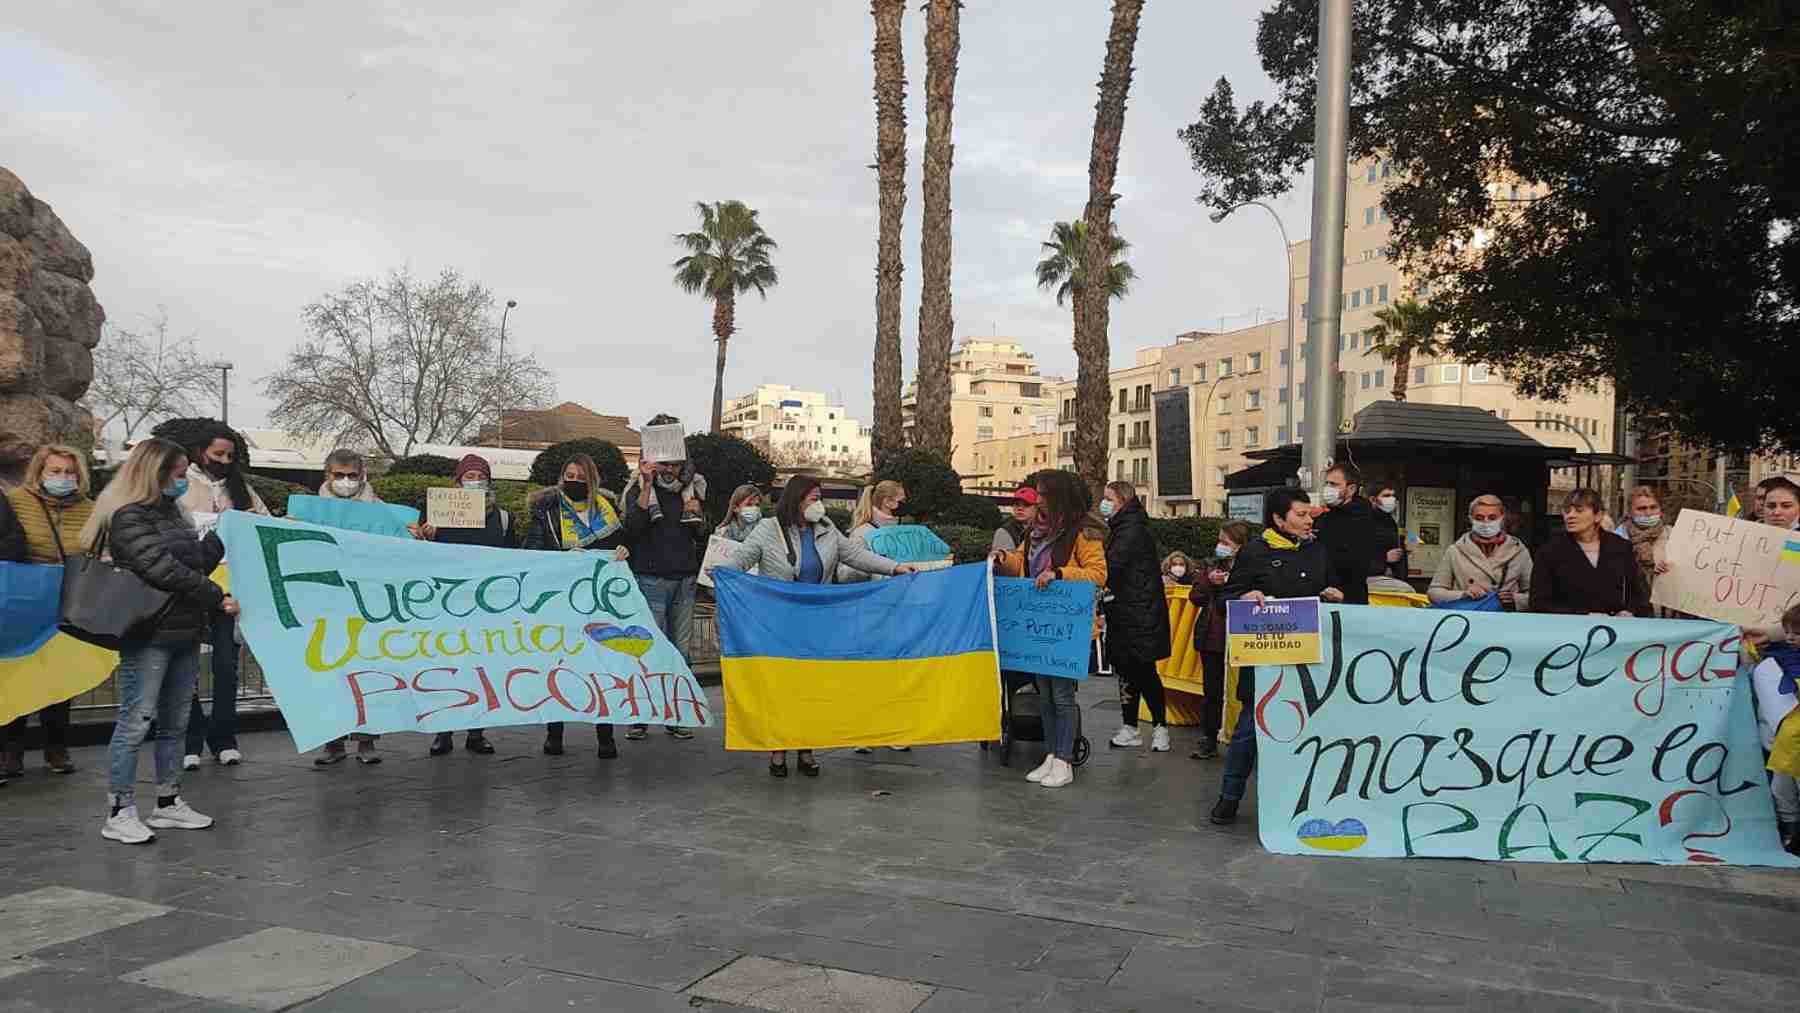 Imagen de la concentración de ucranianos celebrada esta tarde en Palma.